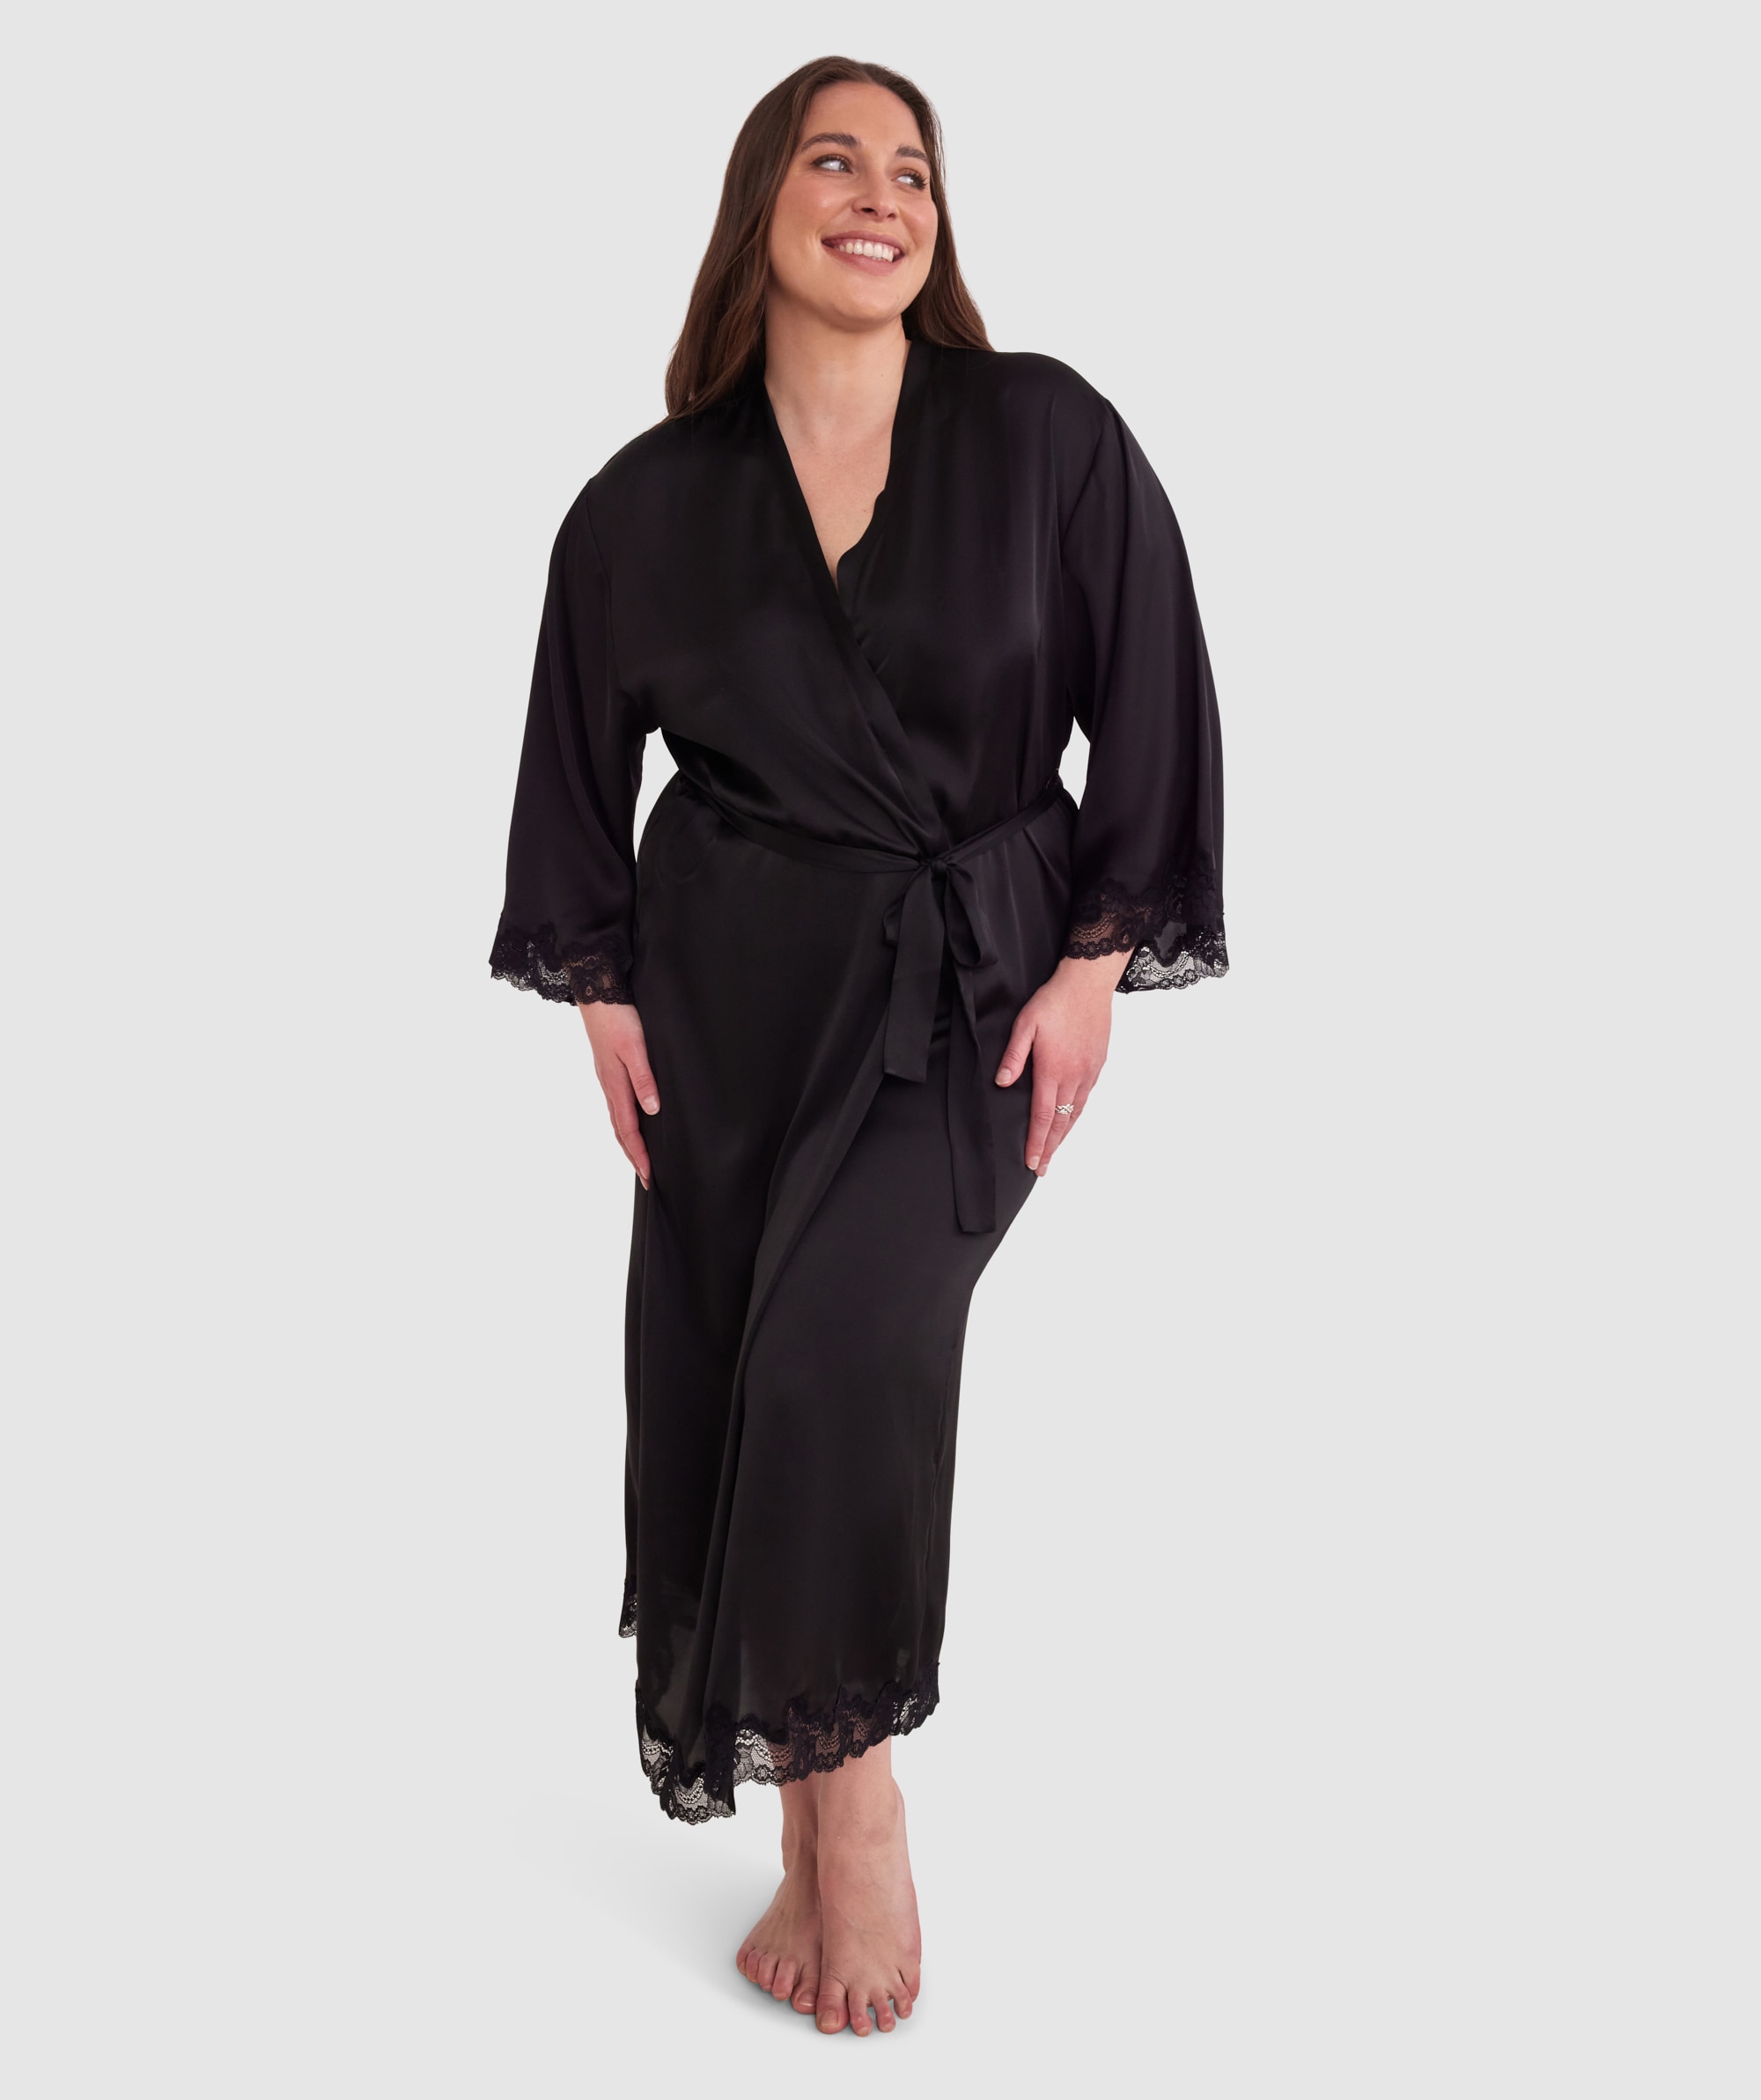 Bras N Things - Bras N Things Black Lace Bodysuit on Designer Wardrobe